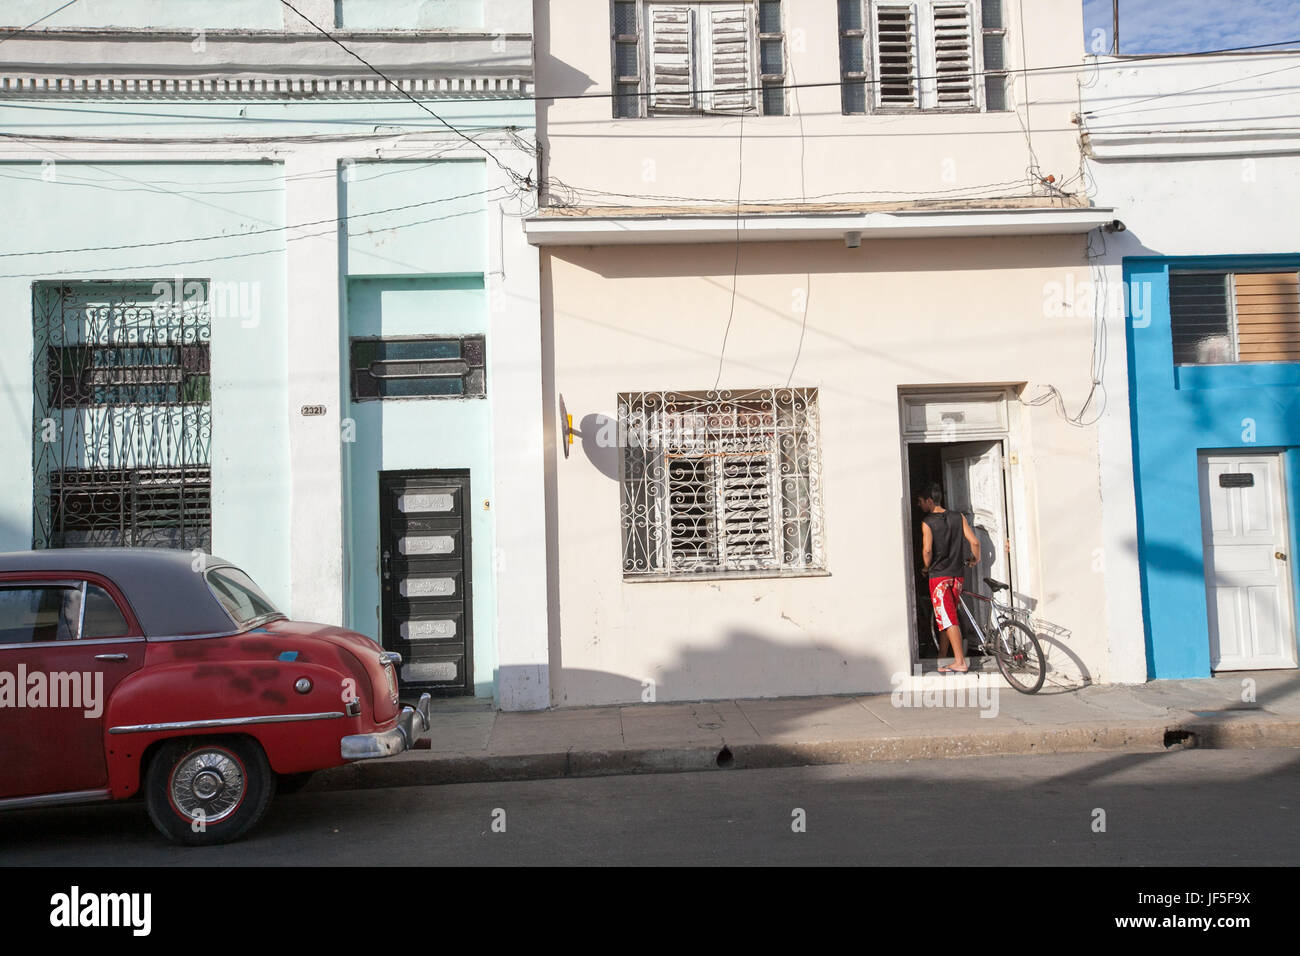 Nei pressi di una classica vettura americana, un giovane uomo cammina la sua bicicletta nella sua casa per le strade di Cienfuegos. Foto Stock